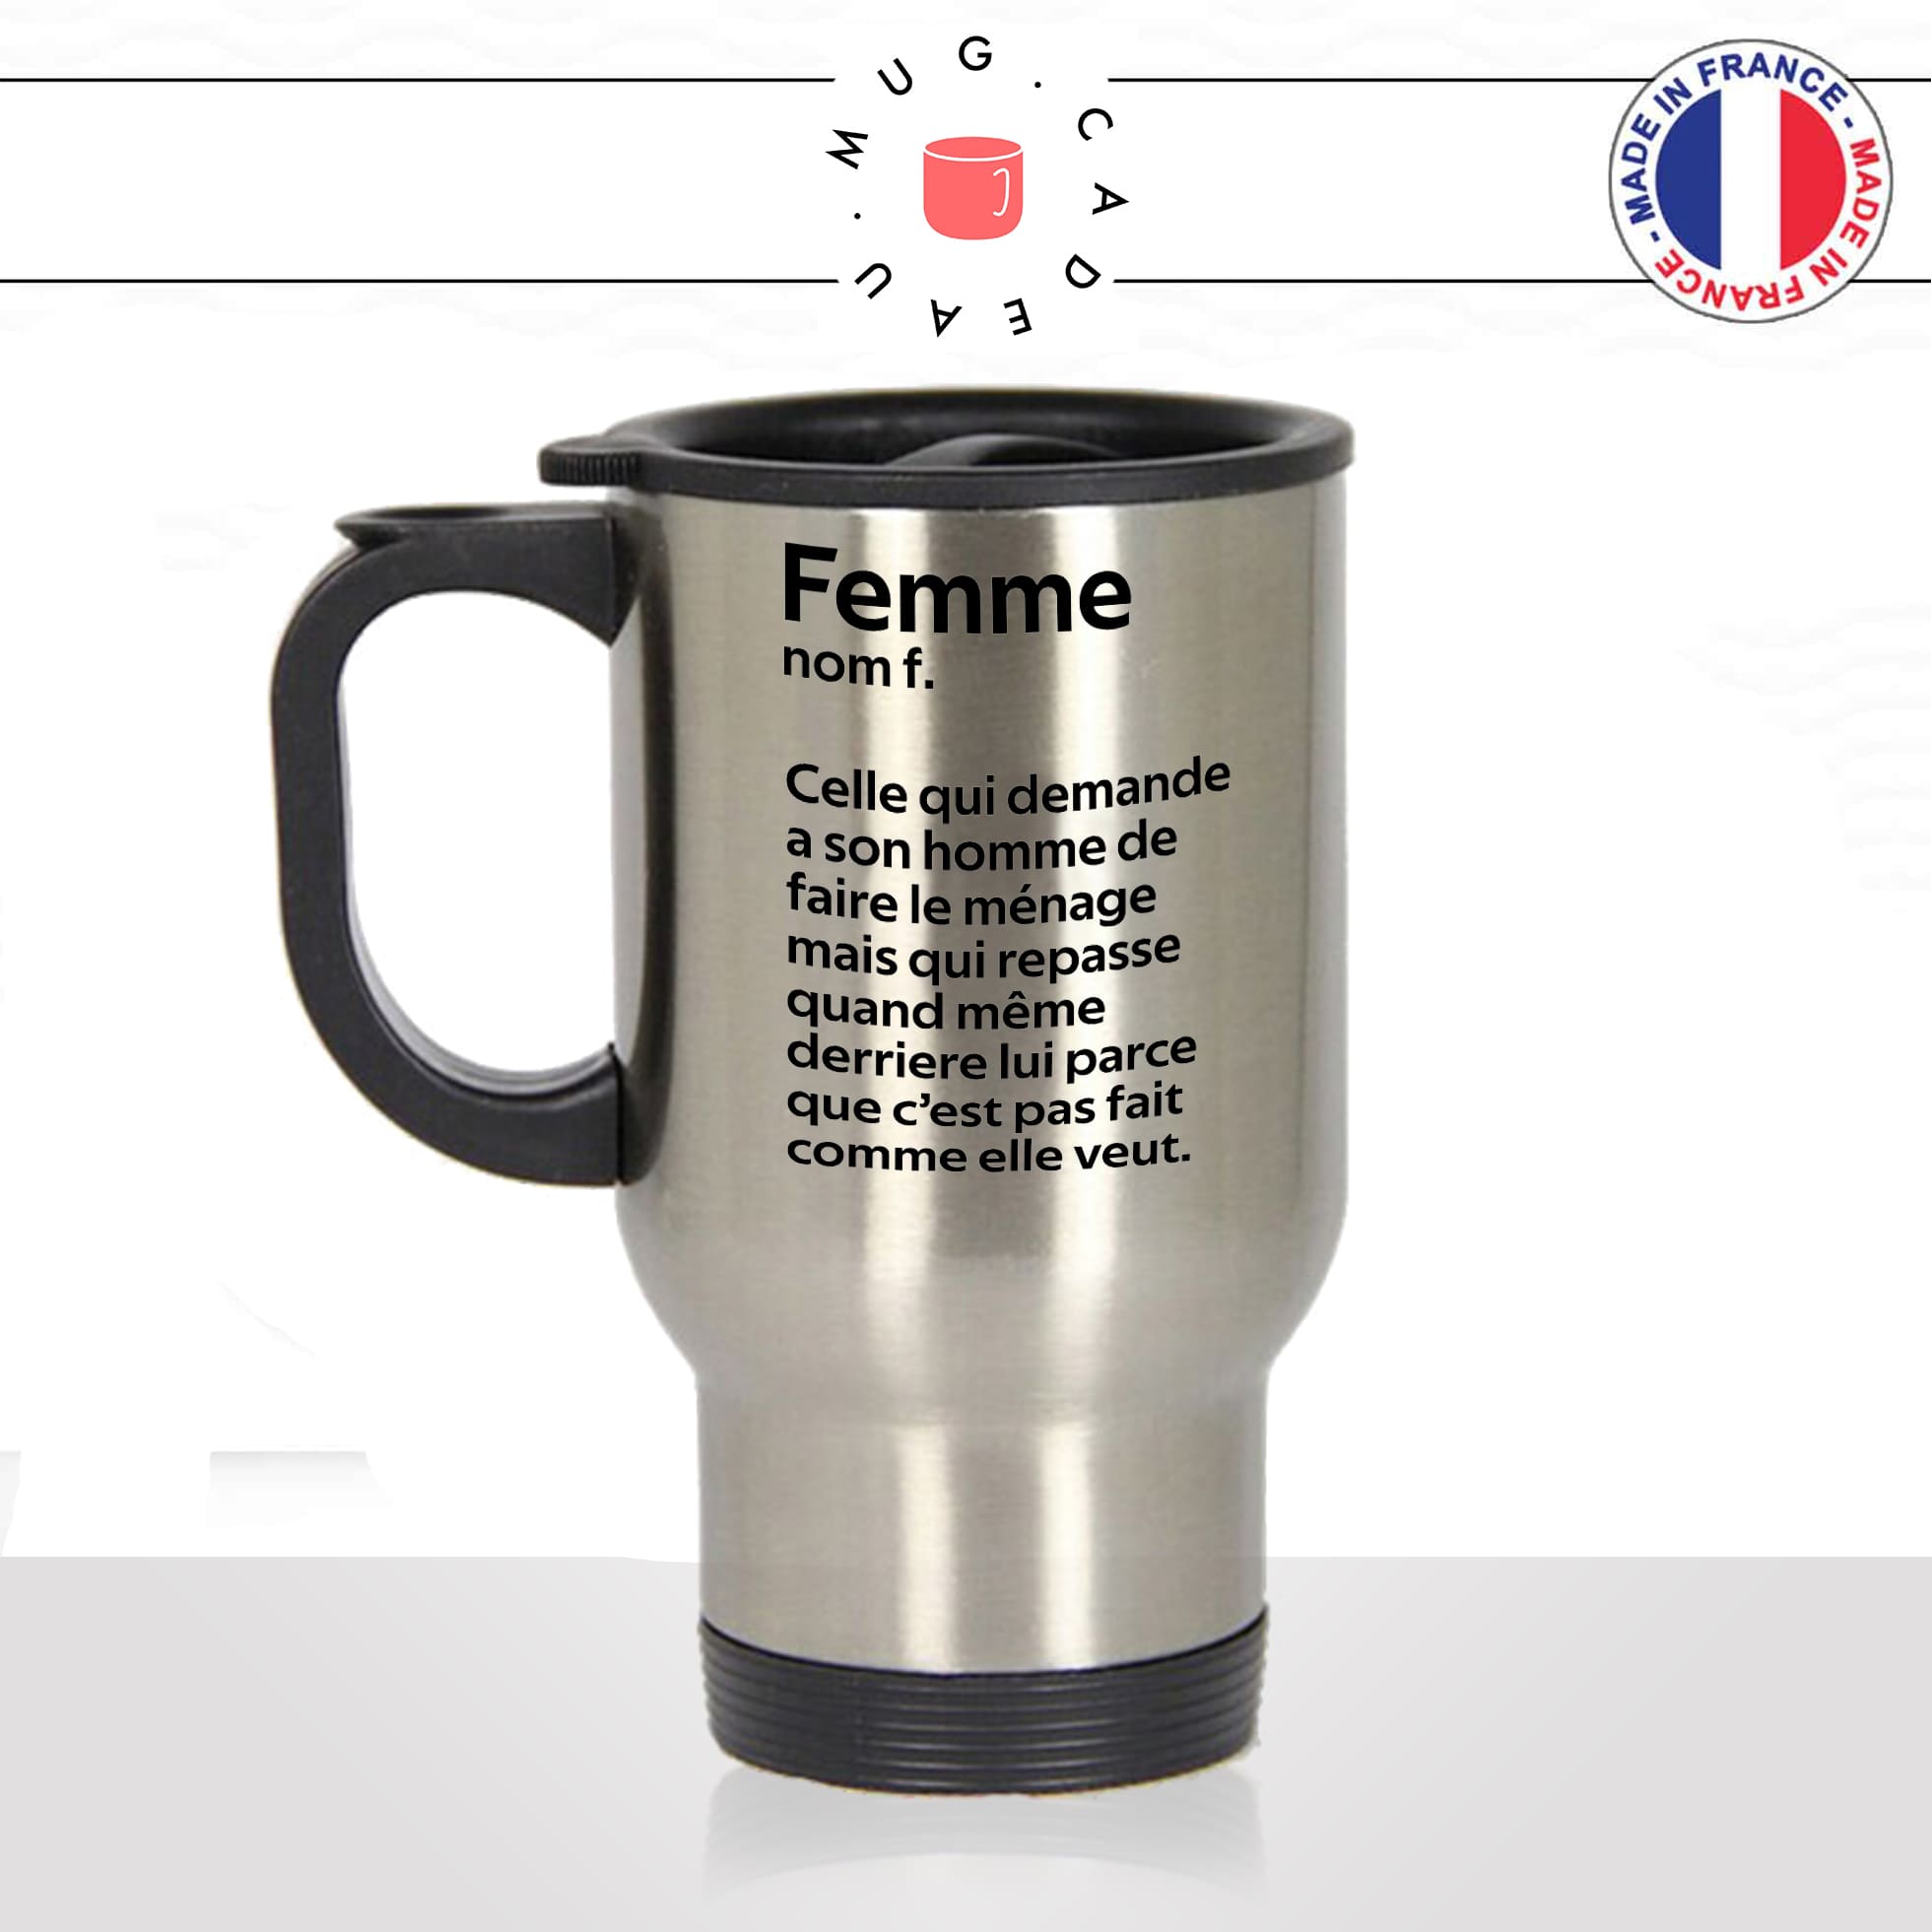 mug-tasse-thermos-isotherme-voyage-femme-définition-ménage-maniaque-maniac-homme-couple-maman-humour-fun-idée-cadeau-originale